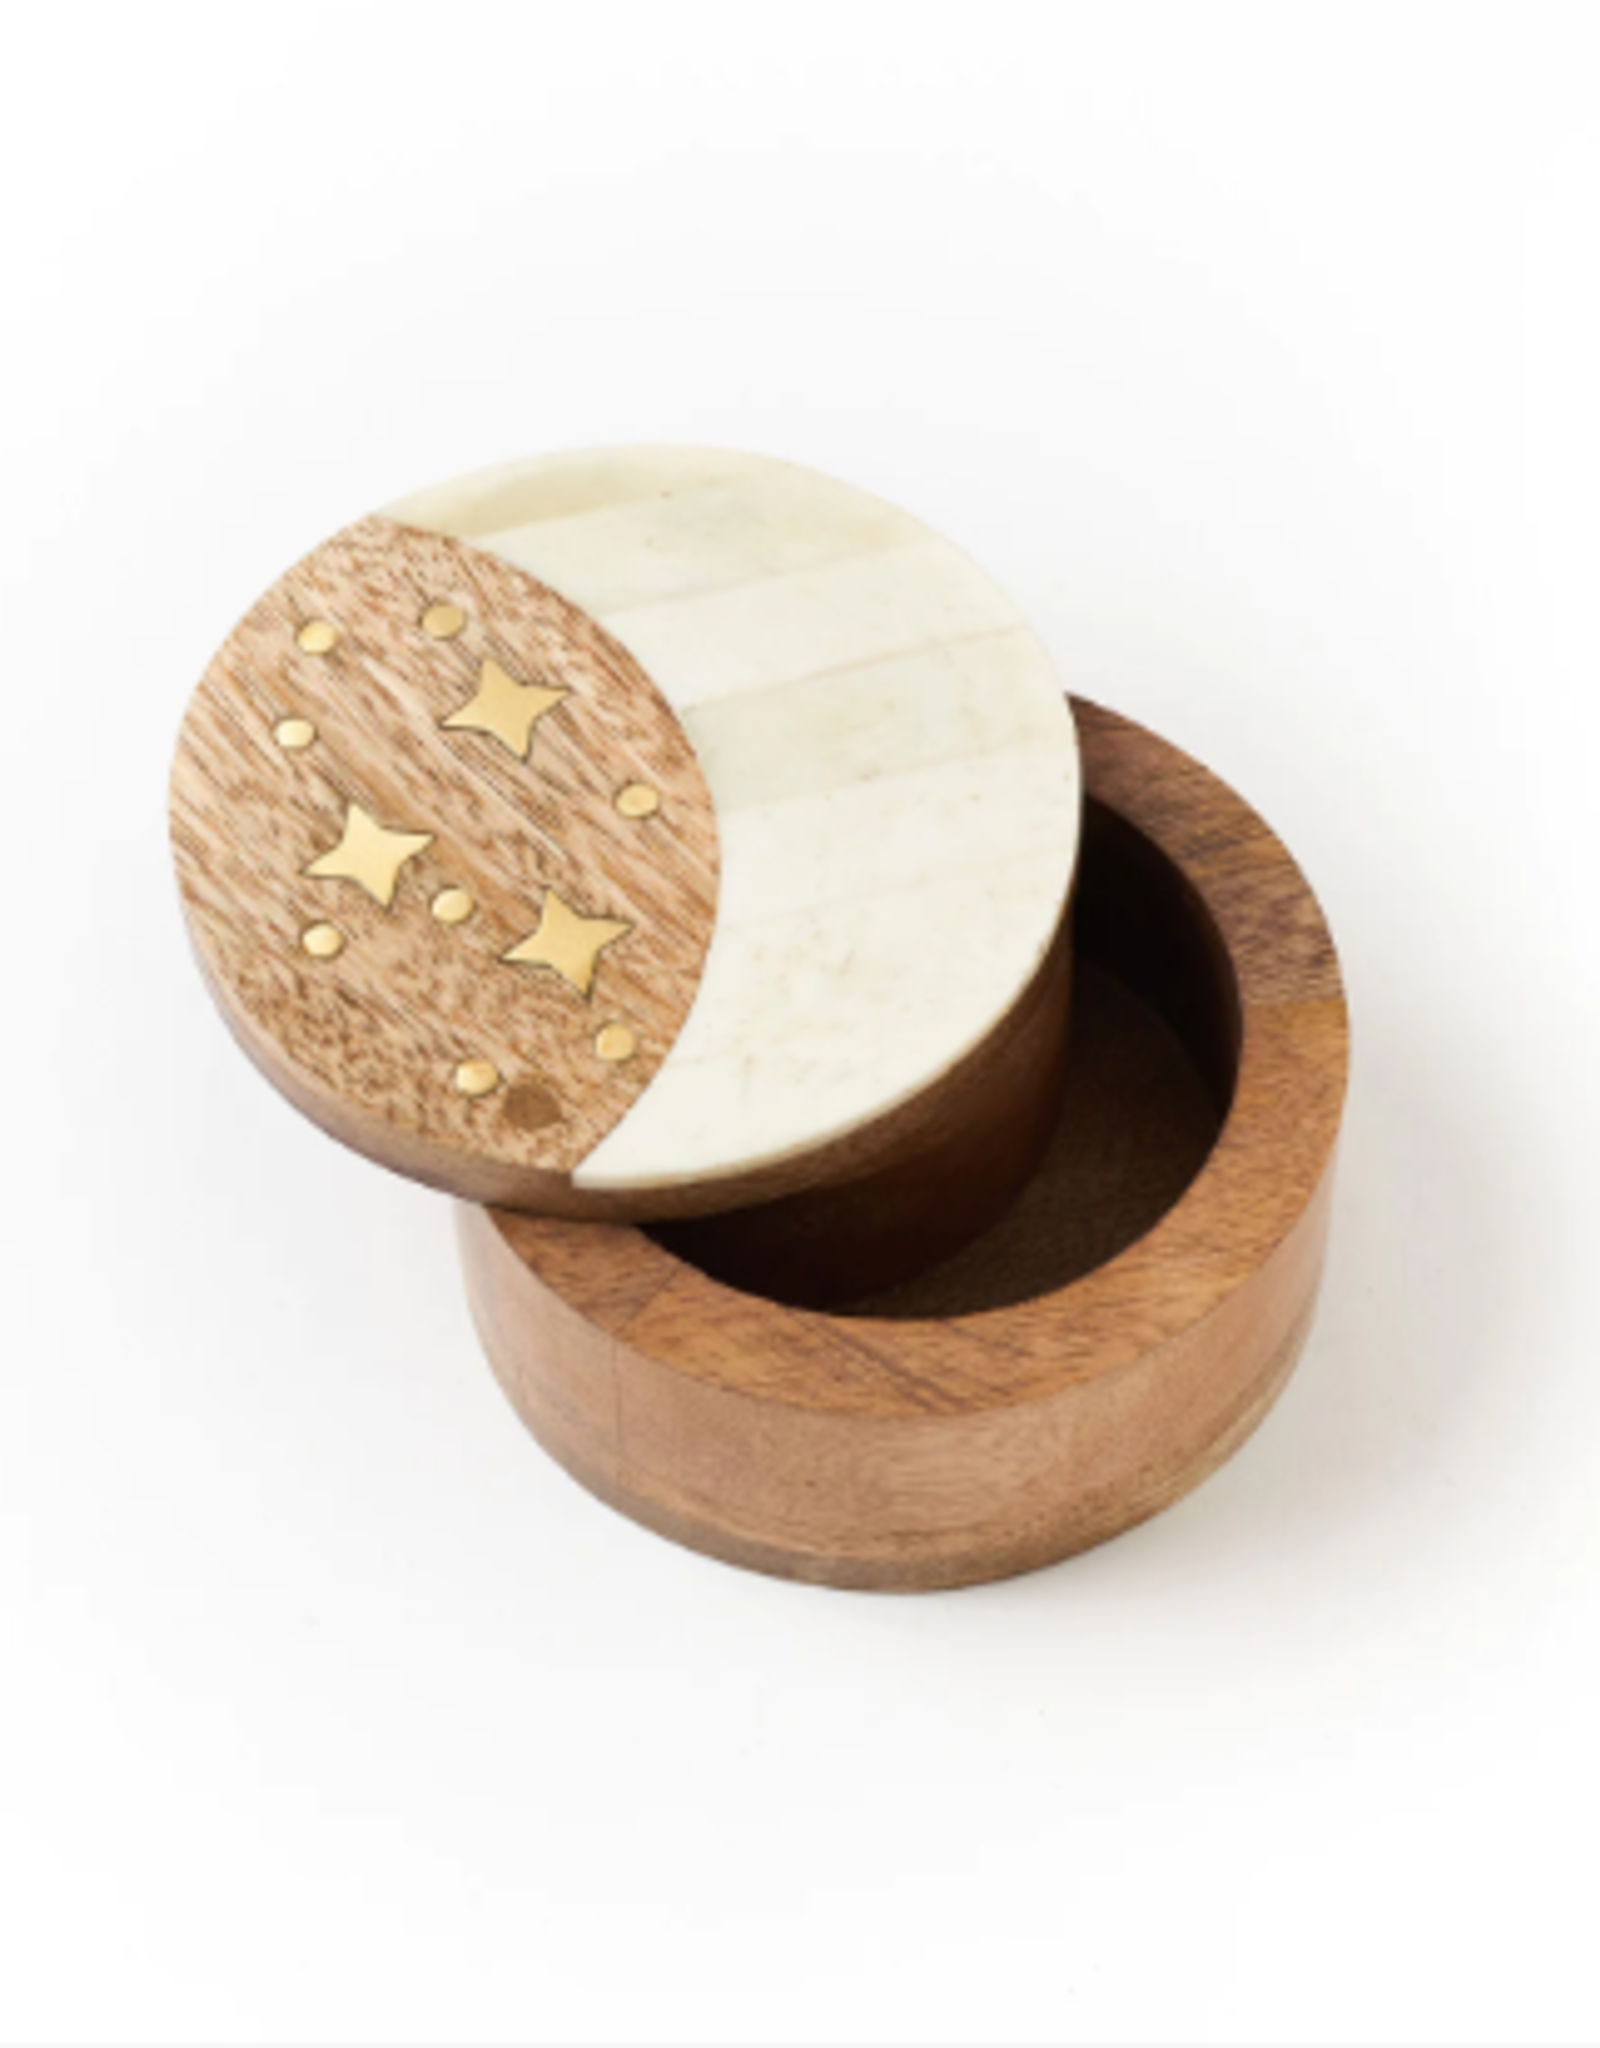 Matr Boomie Nakshatra Moon Stars Pivot Box - Bone, Wood, Brass